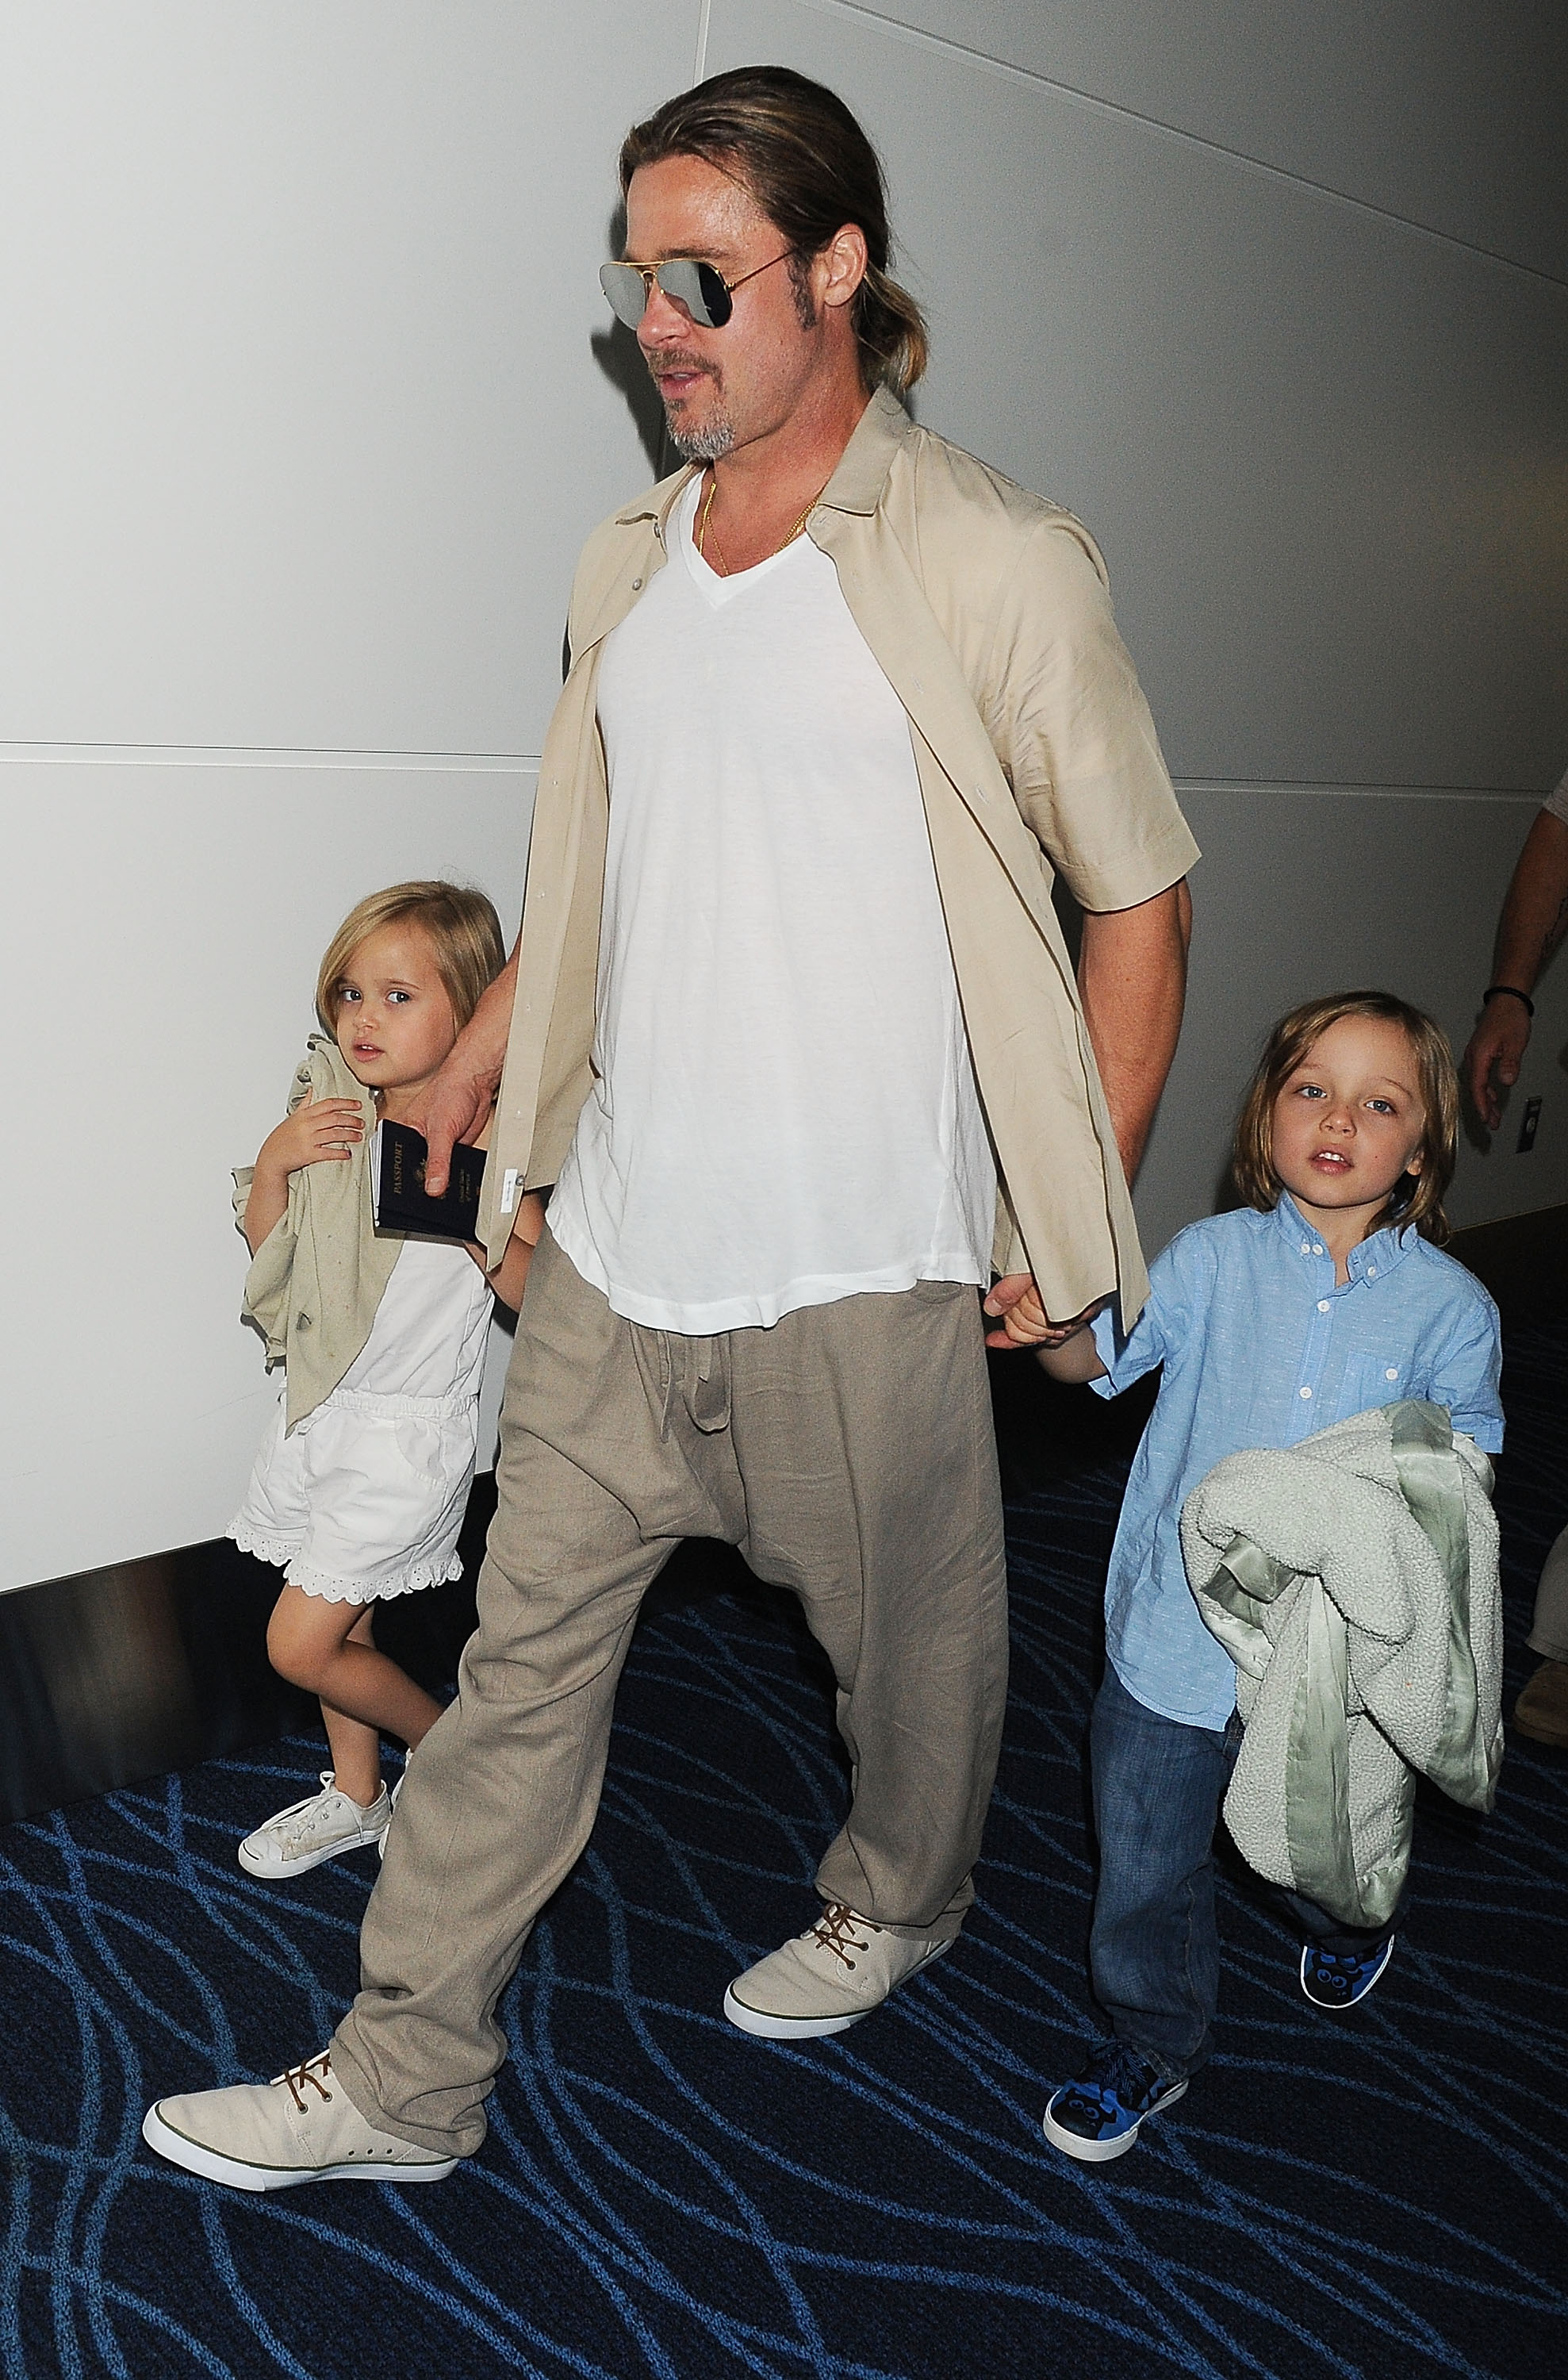 Brad Pitt y sus hijos gemelos Knox y Vivienne Jolie-Pitt el 30 de julio de 2013, en Tokio, Japón | Fuente: Getty Images